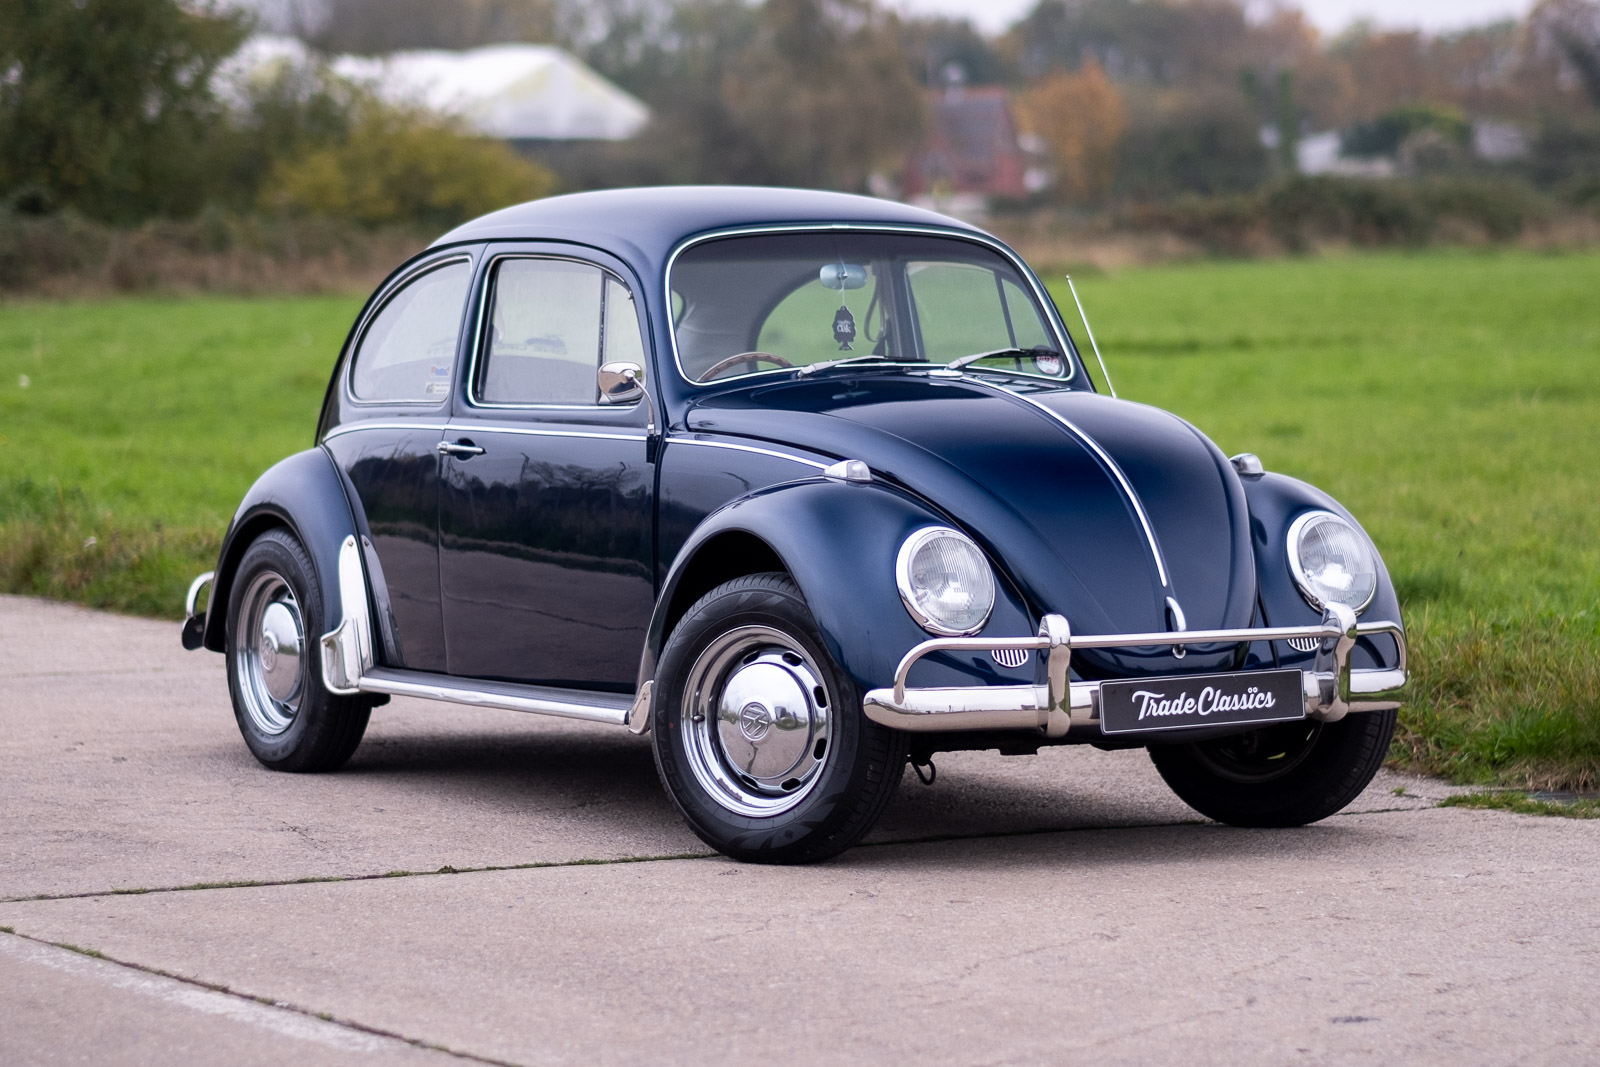 https://www.tradeclassics.com/wp-content/uploads/2021/11/1967-Volkswagen-Beetle-Blue-Exterior-1-1.jpg